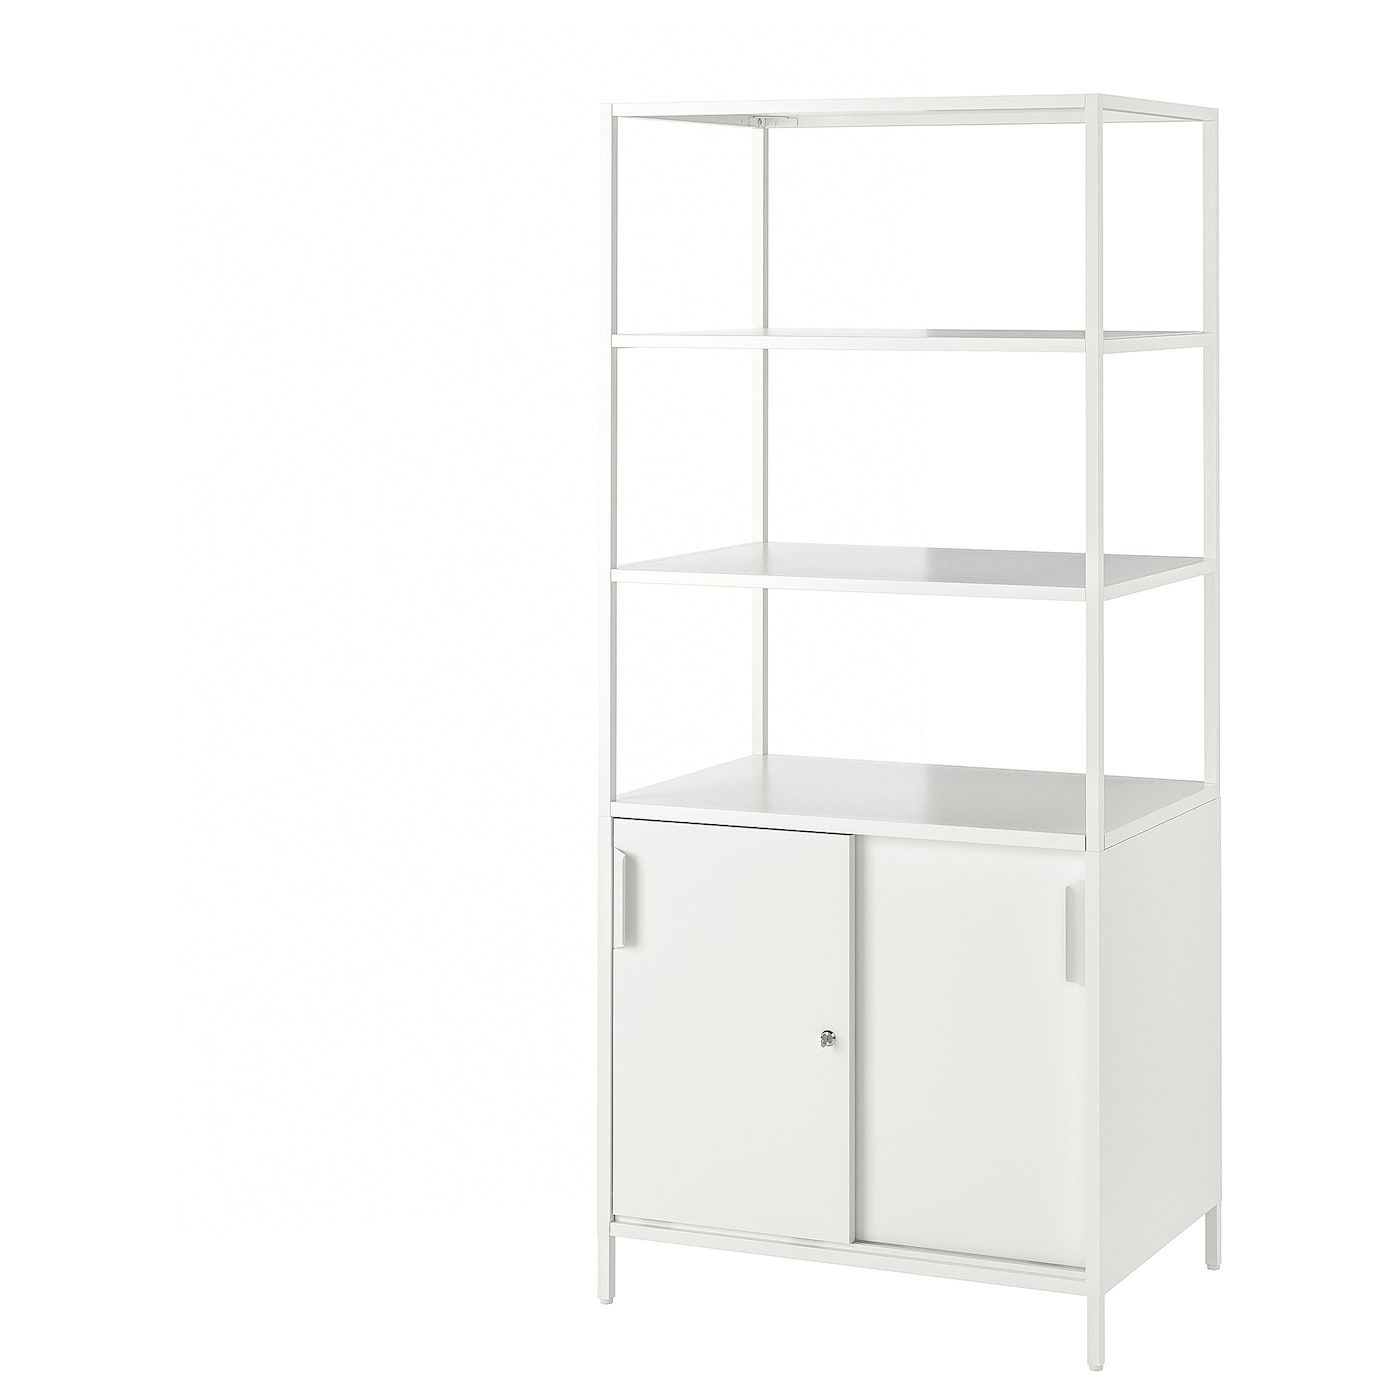 Шкаф - TROTTEN IKEA/ ТРОТТЕН ИКЕА,  180х80 см, белый